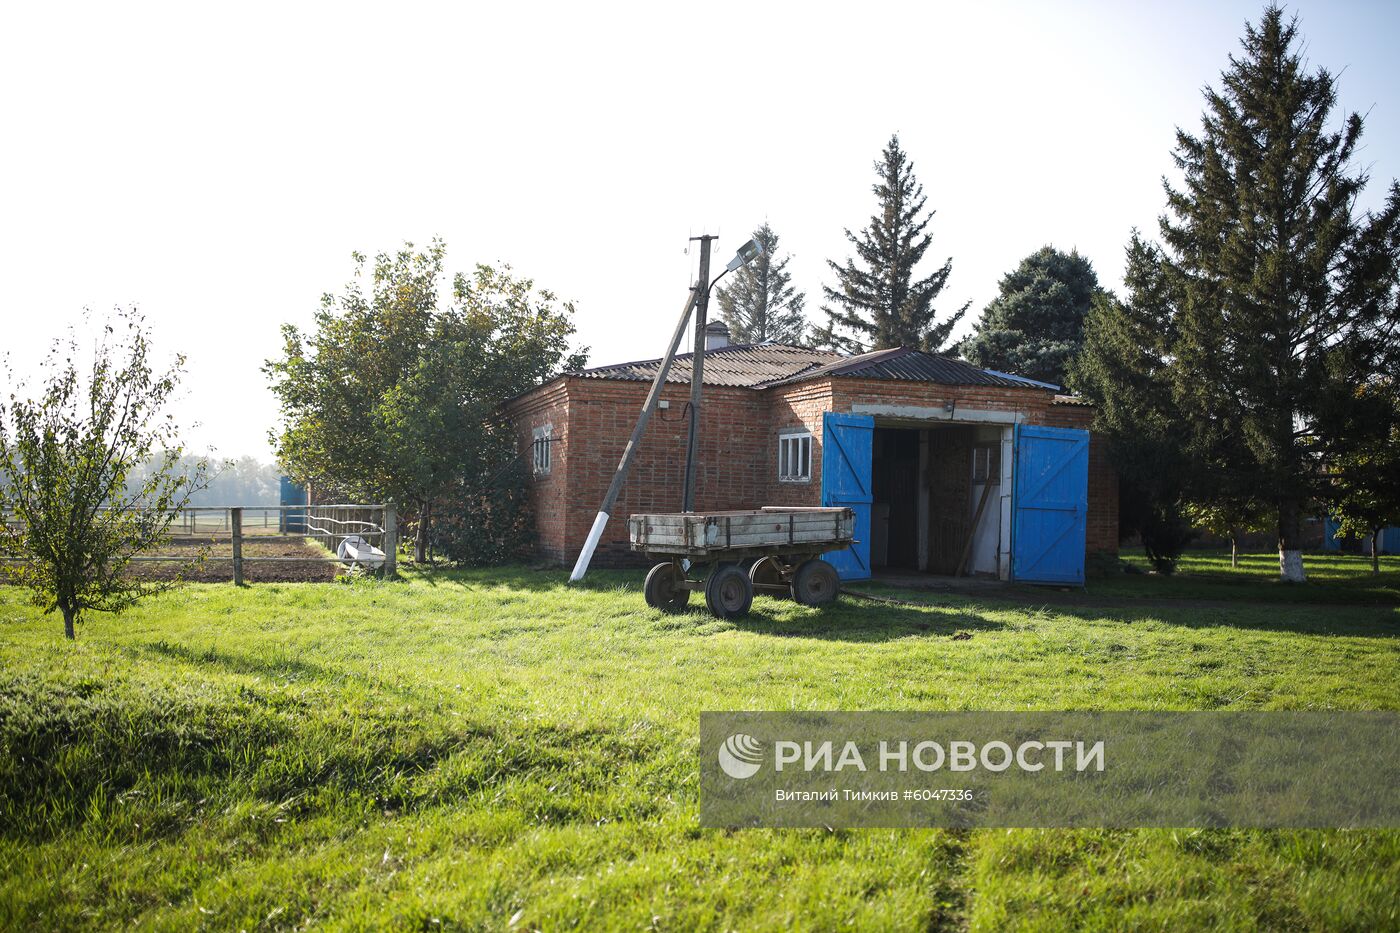 Конный завод "Восход" в Краснодарском крае